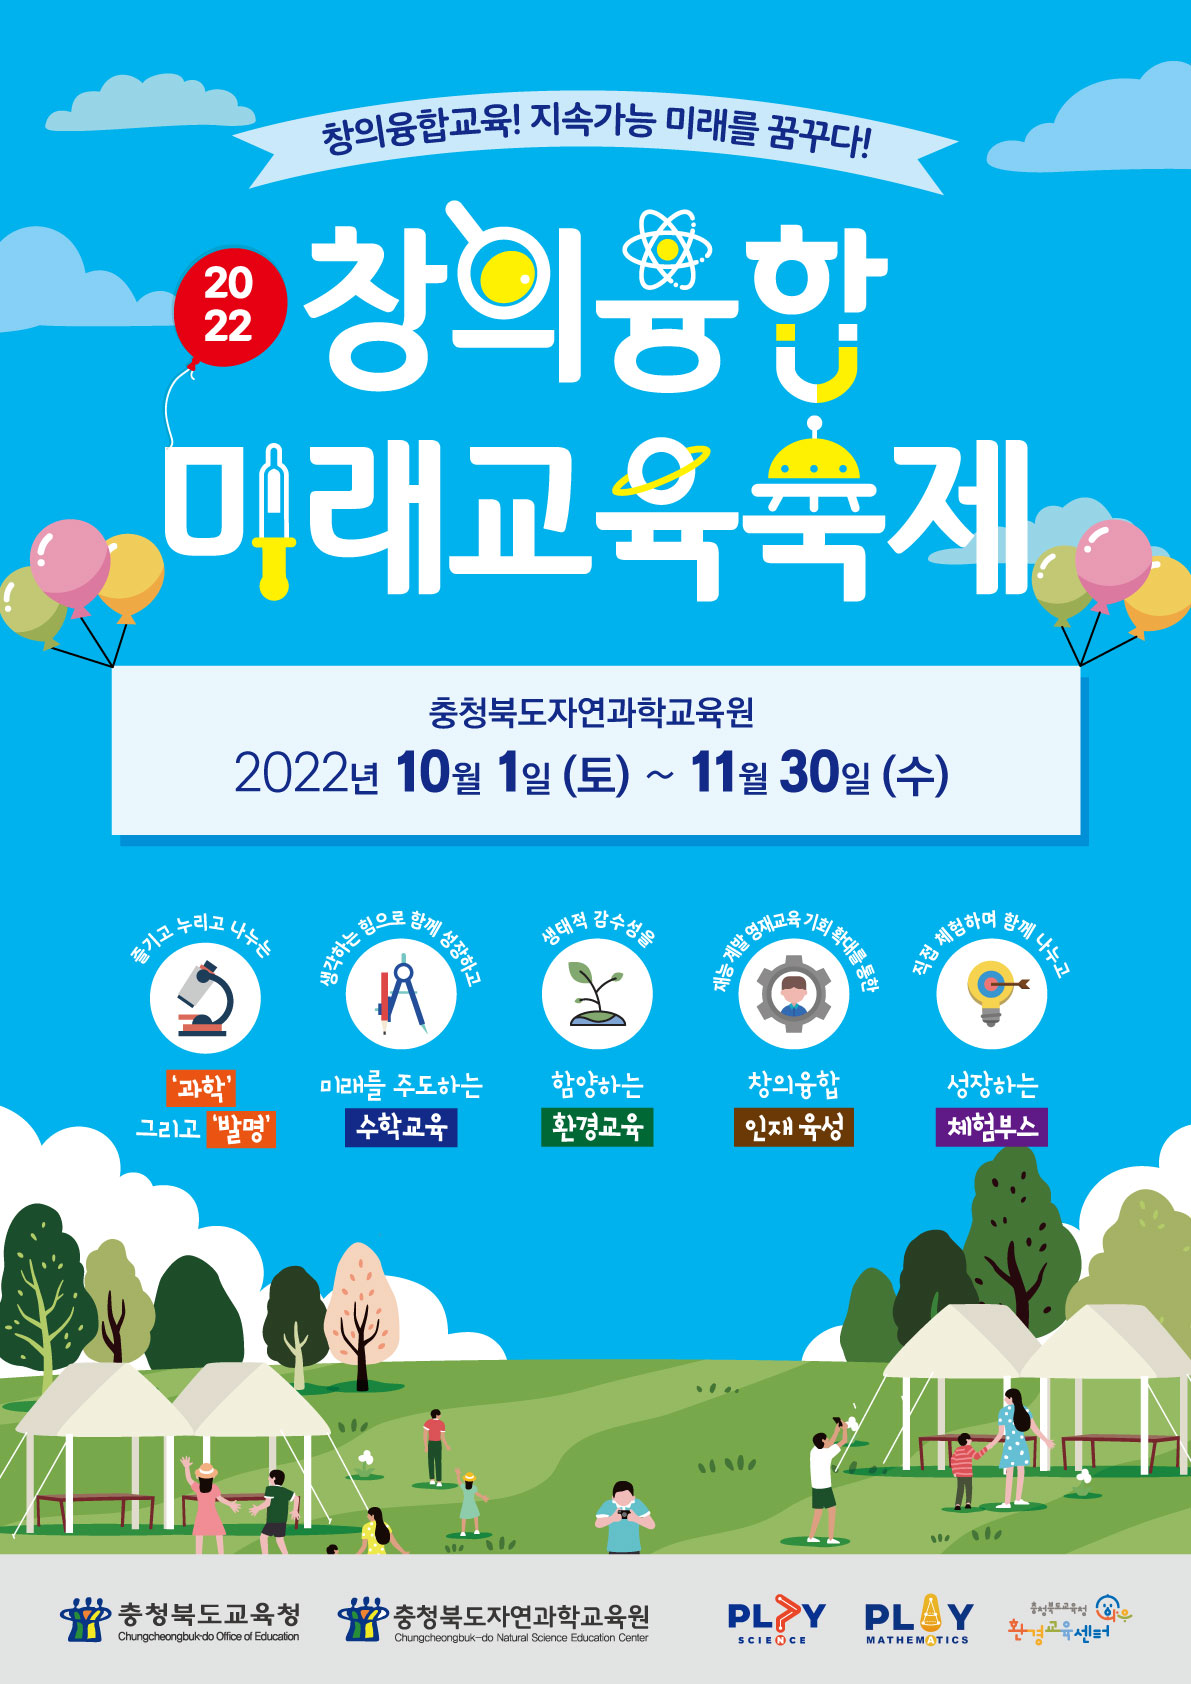 사본 -2022. 창의융합미래교육축제 홍보용 포스터